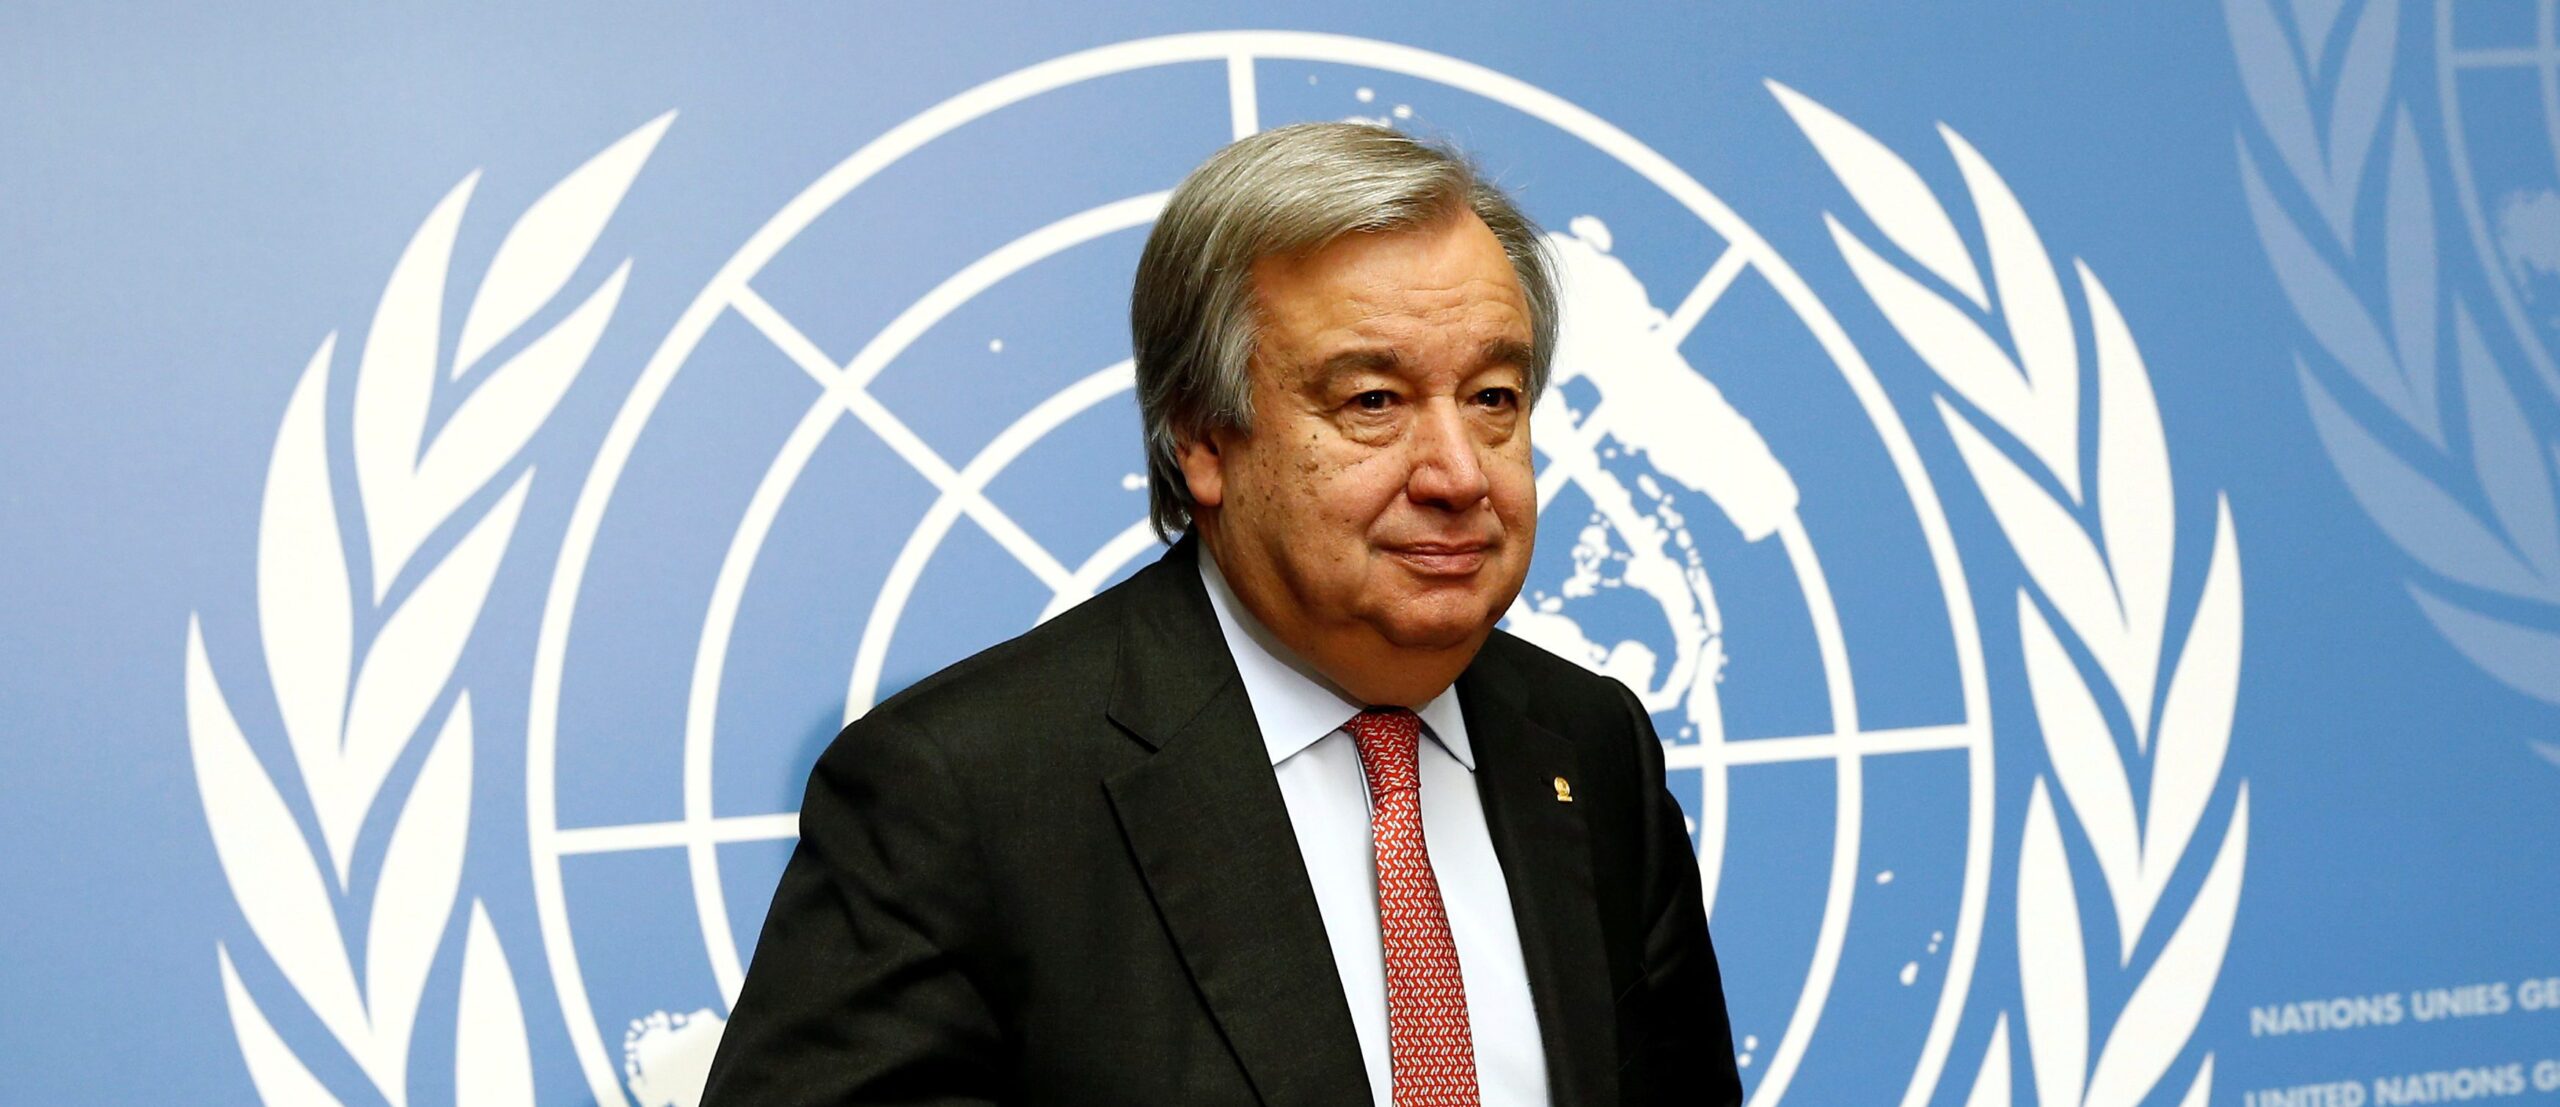 Algeria unhappy with UN Secretary General Sahara Envoy nominee